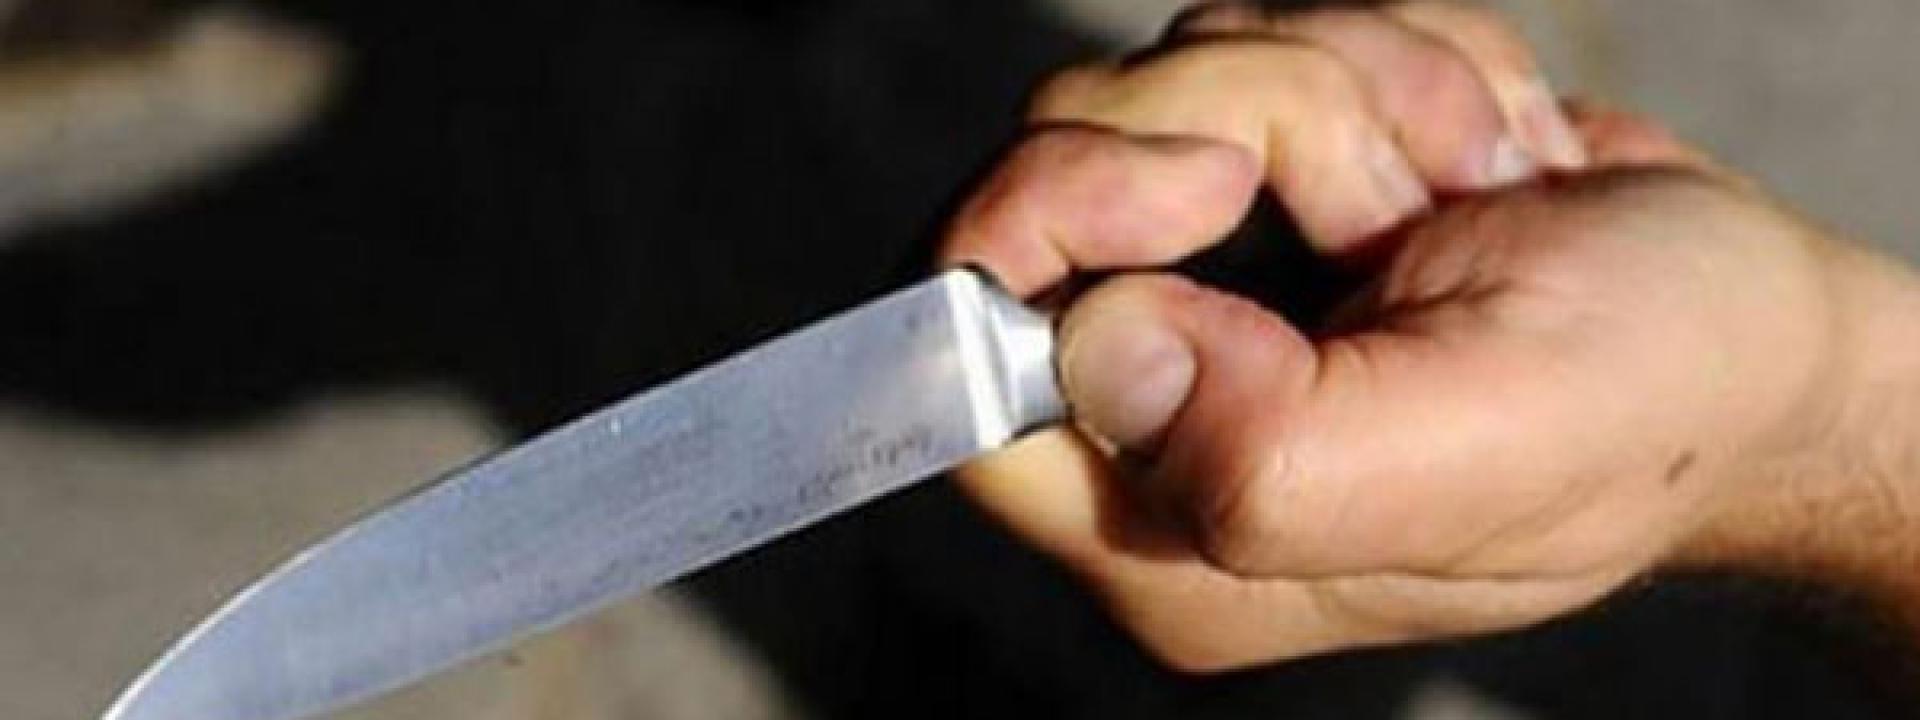 Cinque rapine in un giorno: col coltello tagliano i pantaloni della vittima per prendere il portafogli